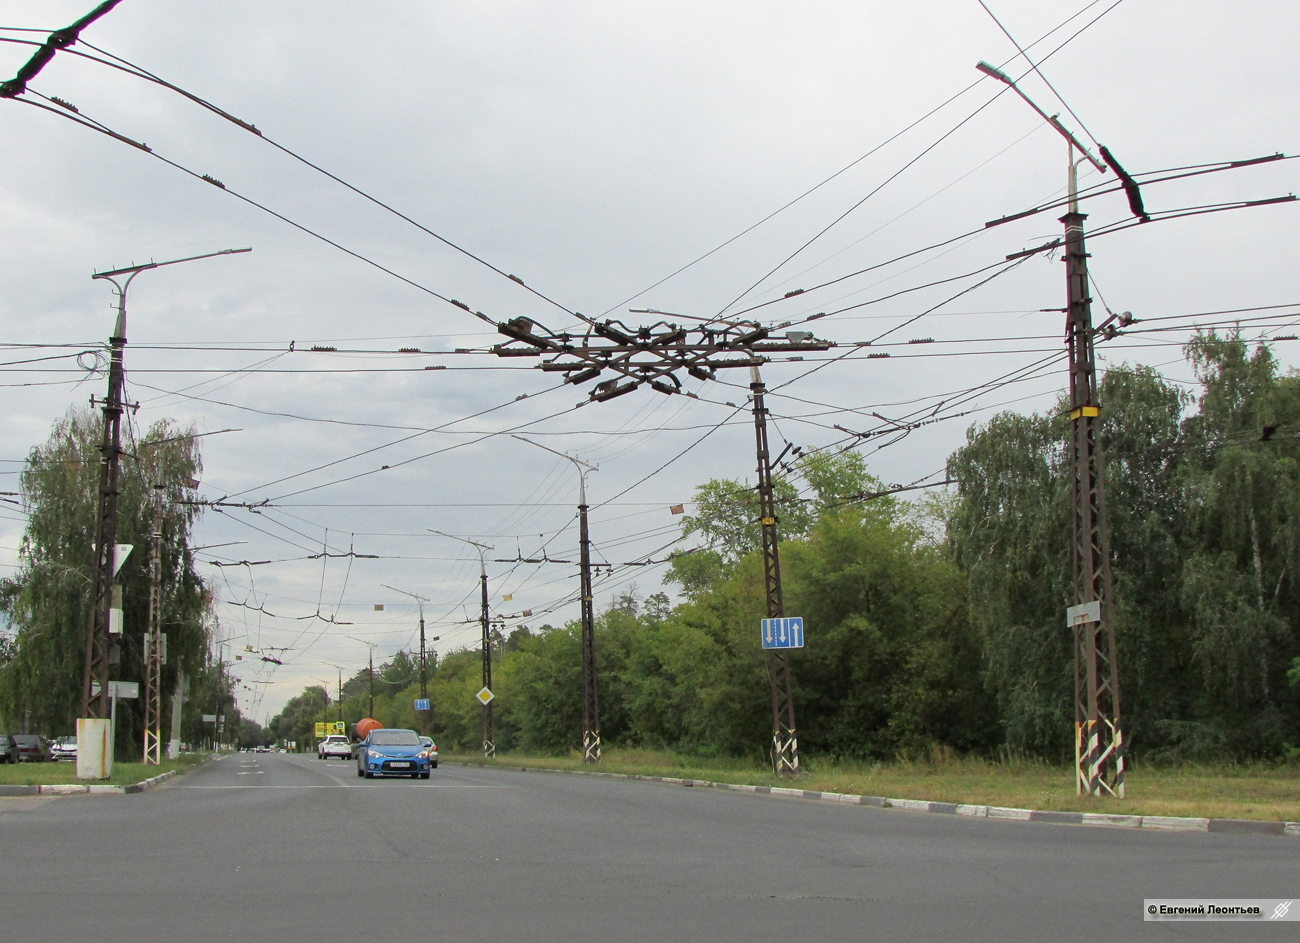 Тольятти — Контактная сеть и инфраструктура